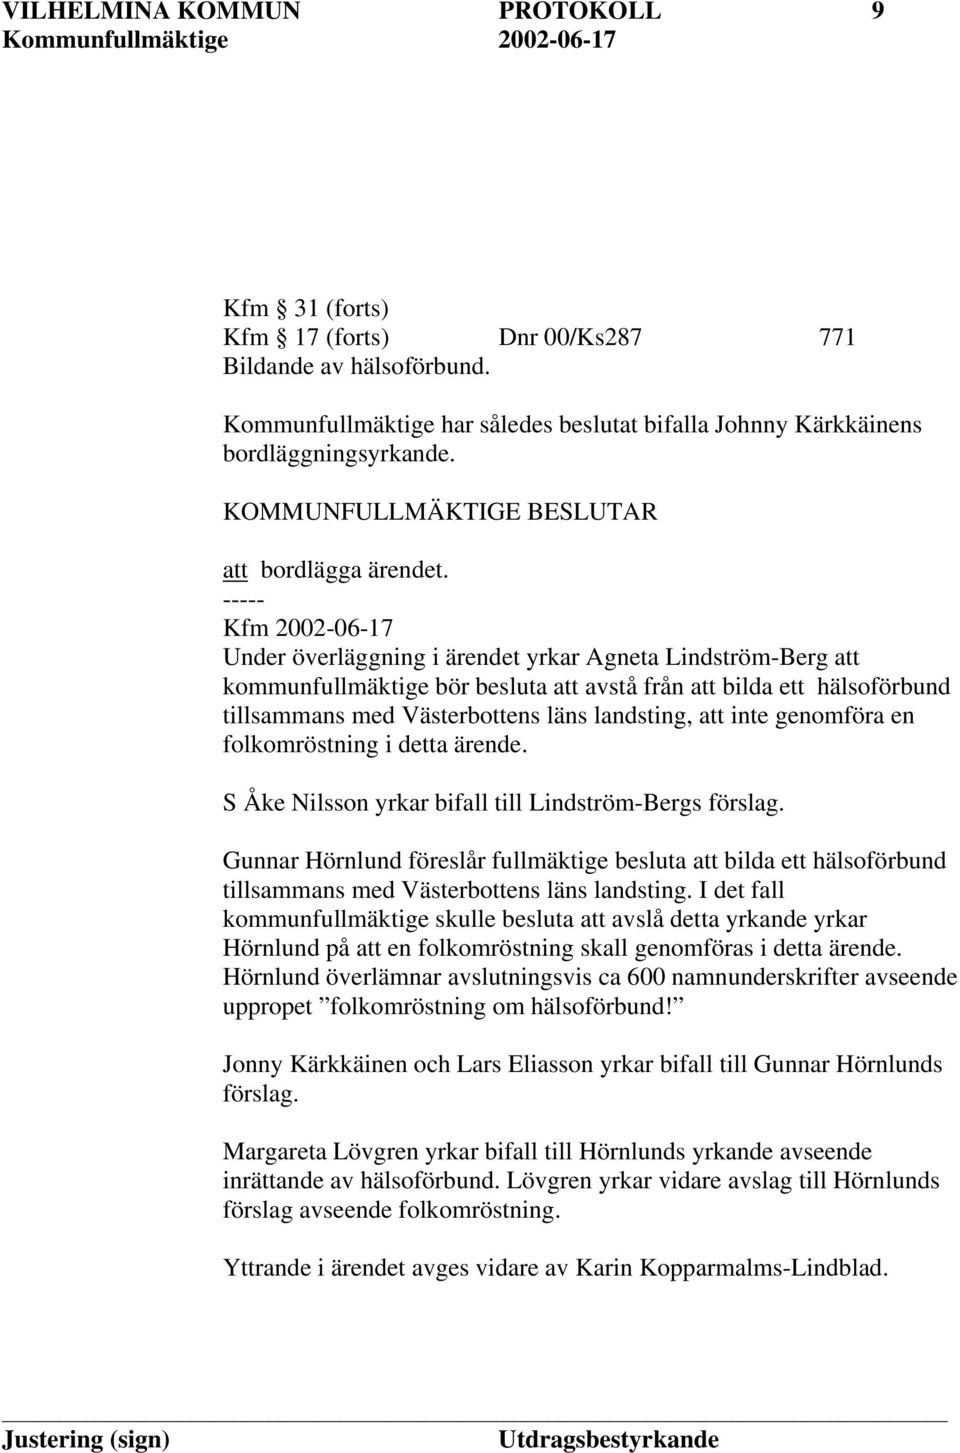 ----- Kfm 2002-06-17 Under överläggning i ärendet yrkar Agneta Lindström-Berg att kommunfullmäktige bör besluta att avstå från att bilda ett hälsoförbund tillsammans med Västerbottens läns landsting,